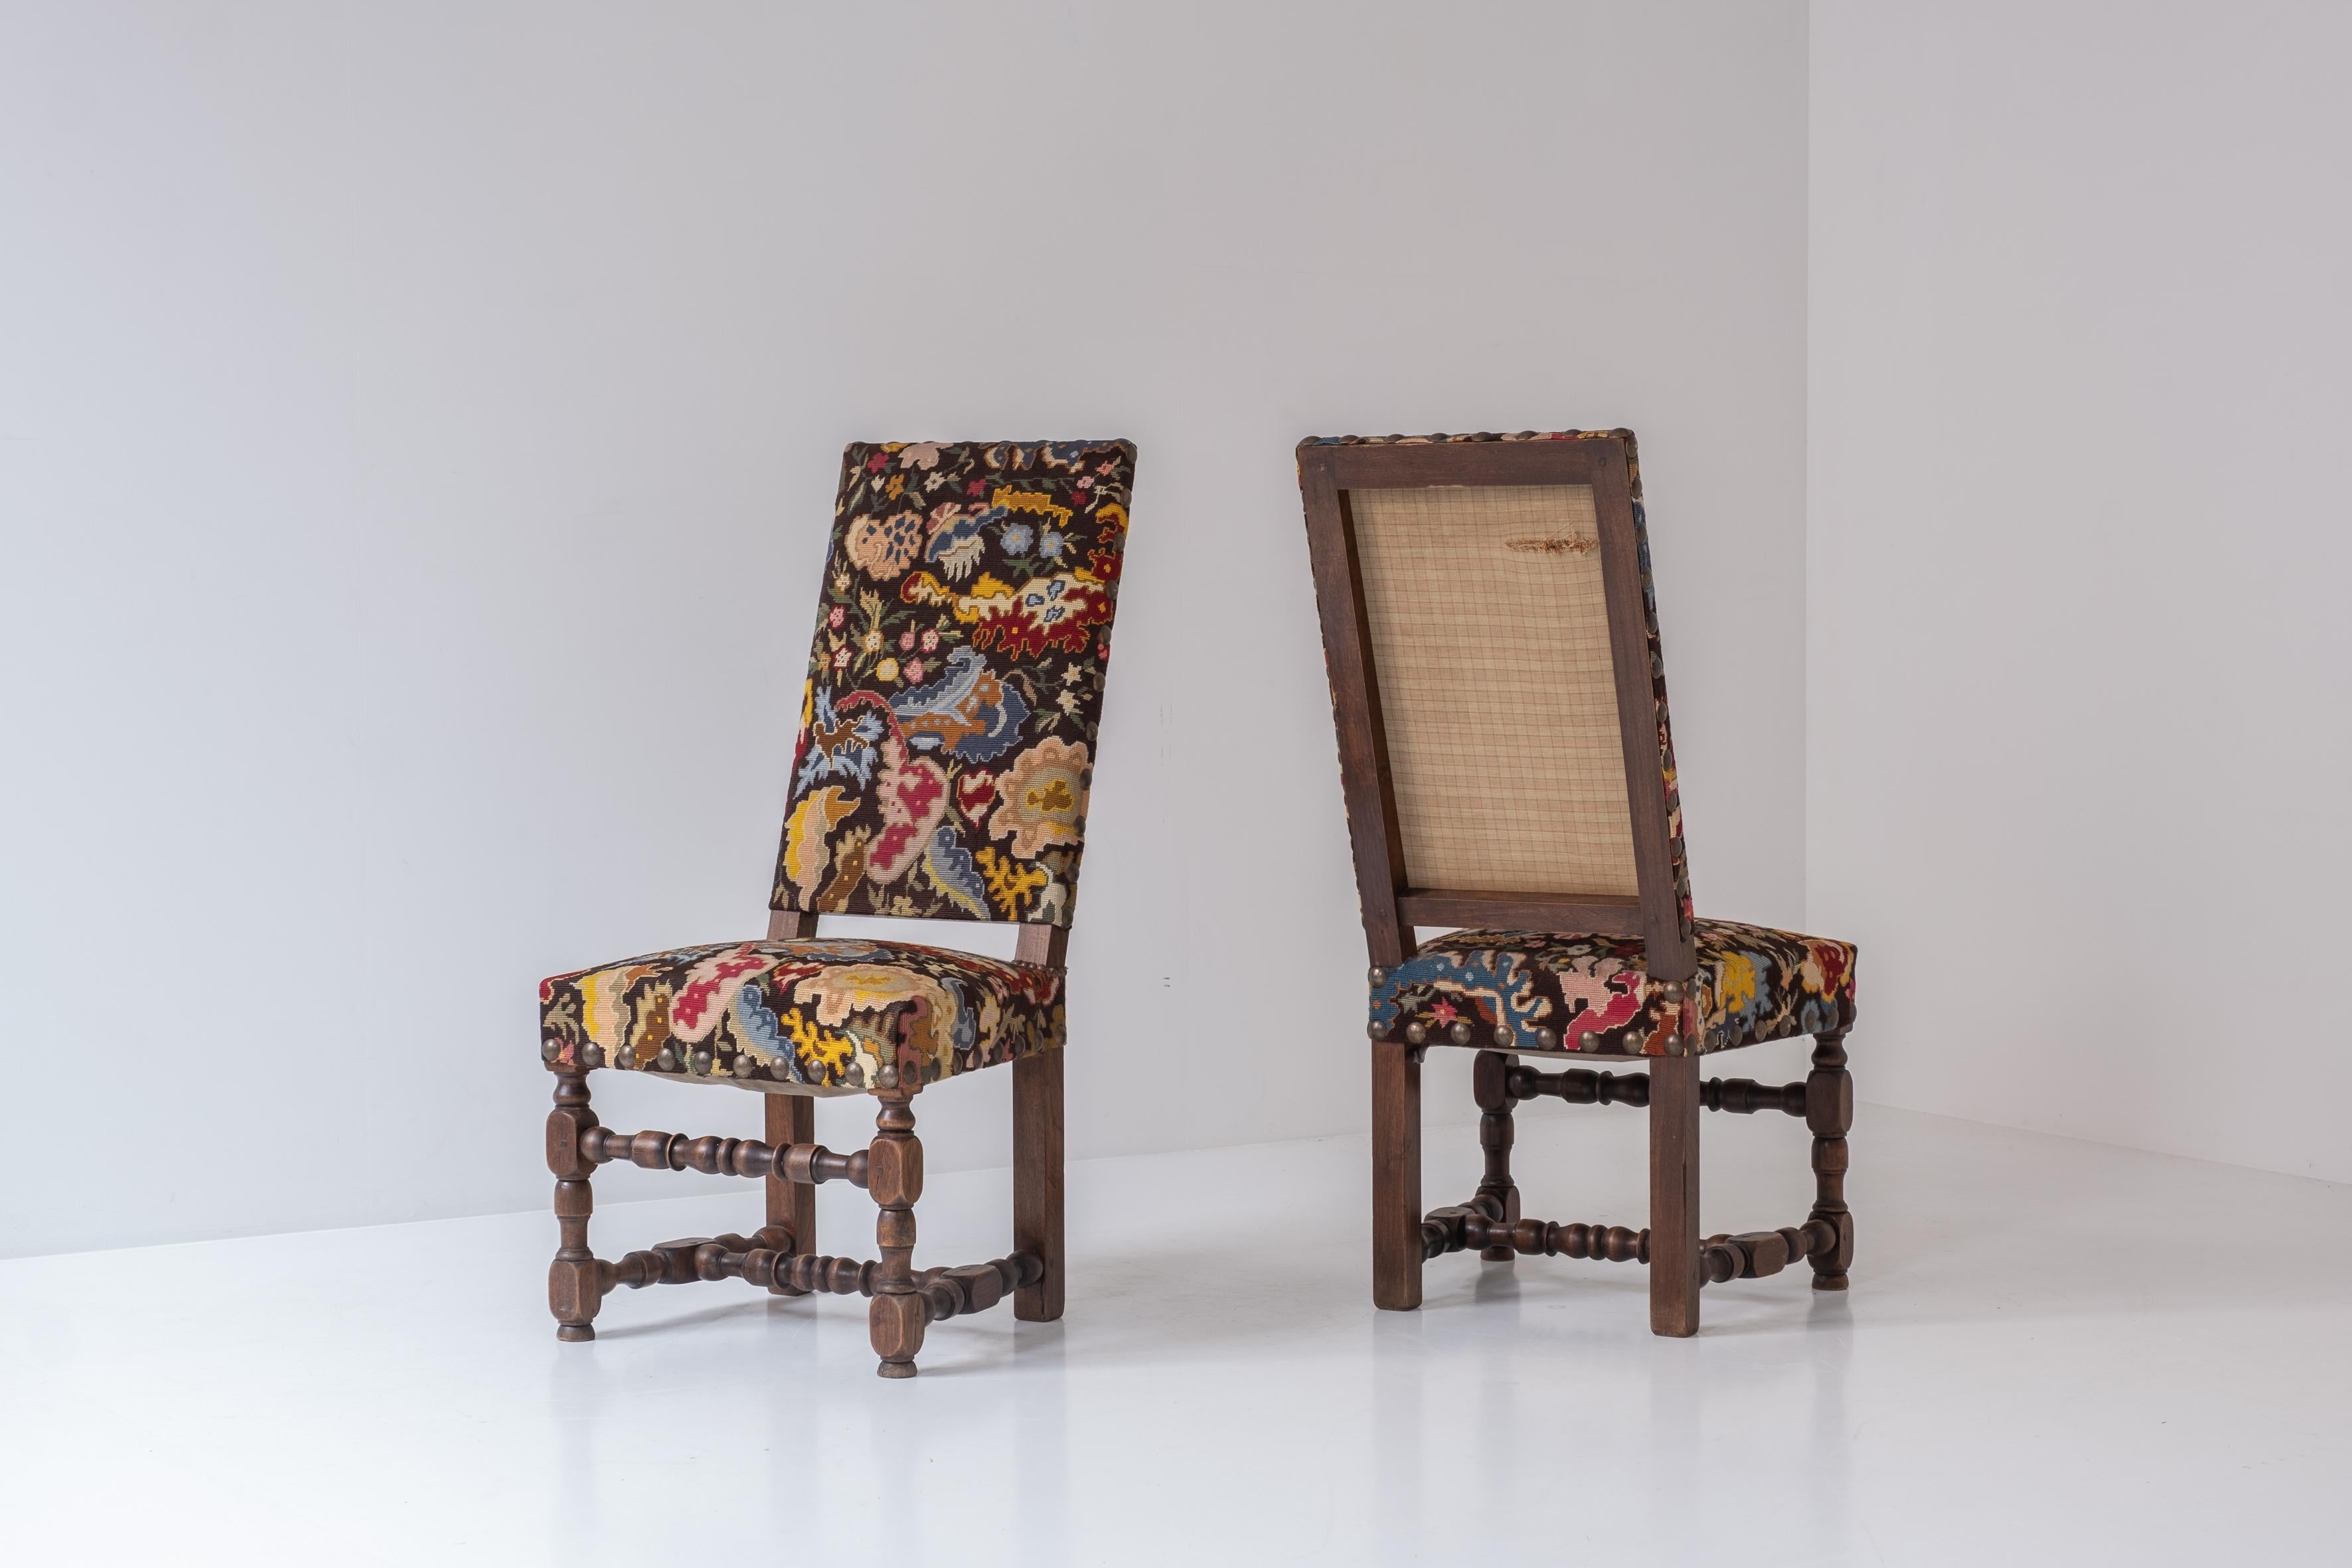 Seltenes Paar barocker Beistellstühle aus Frankreich, um 1890. Diese Stühle aus dem späten 19. Jahrhundert sind aus Nussbaumholz gefertigt und mit alten bunten Wandteppichen gepolstert. Eleganter gedrehter Rahmen mit schönen Messingdetails. Sehr